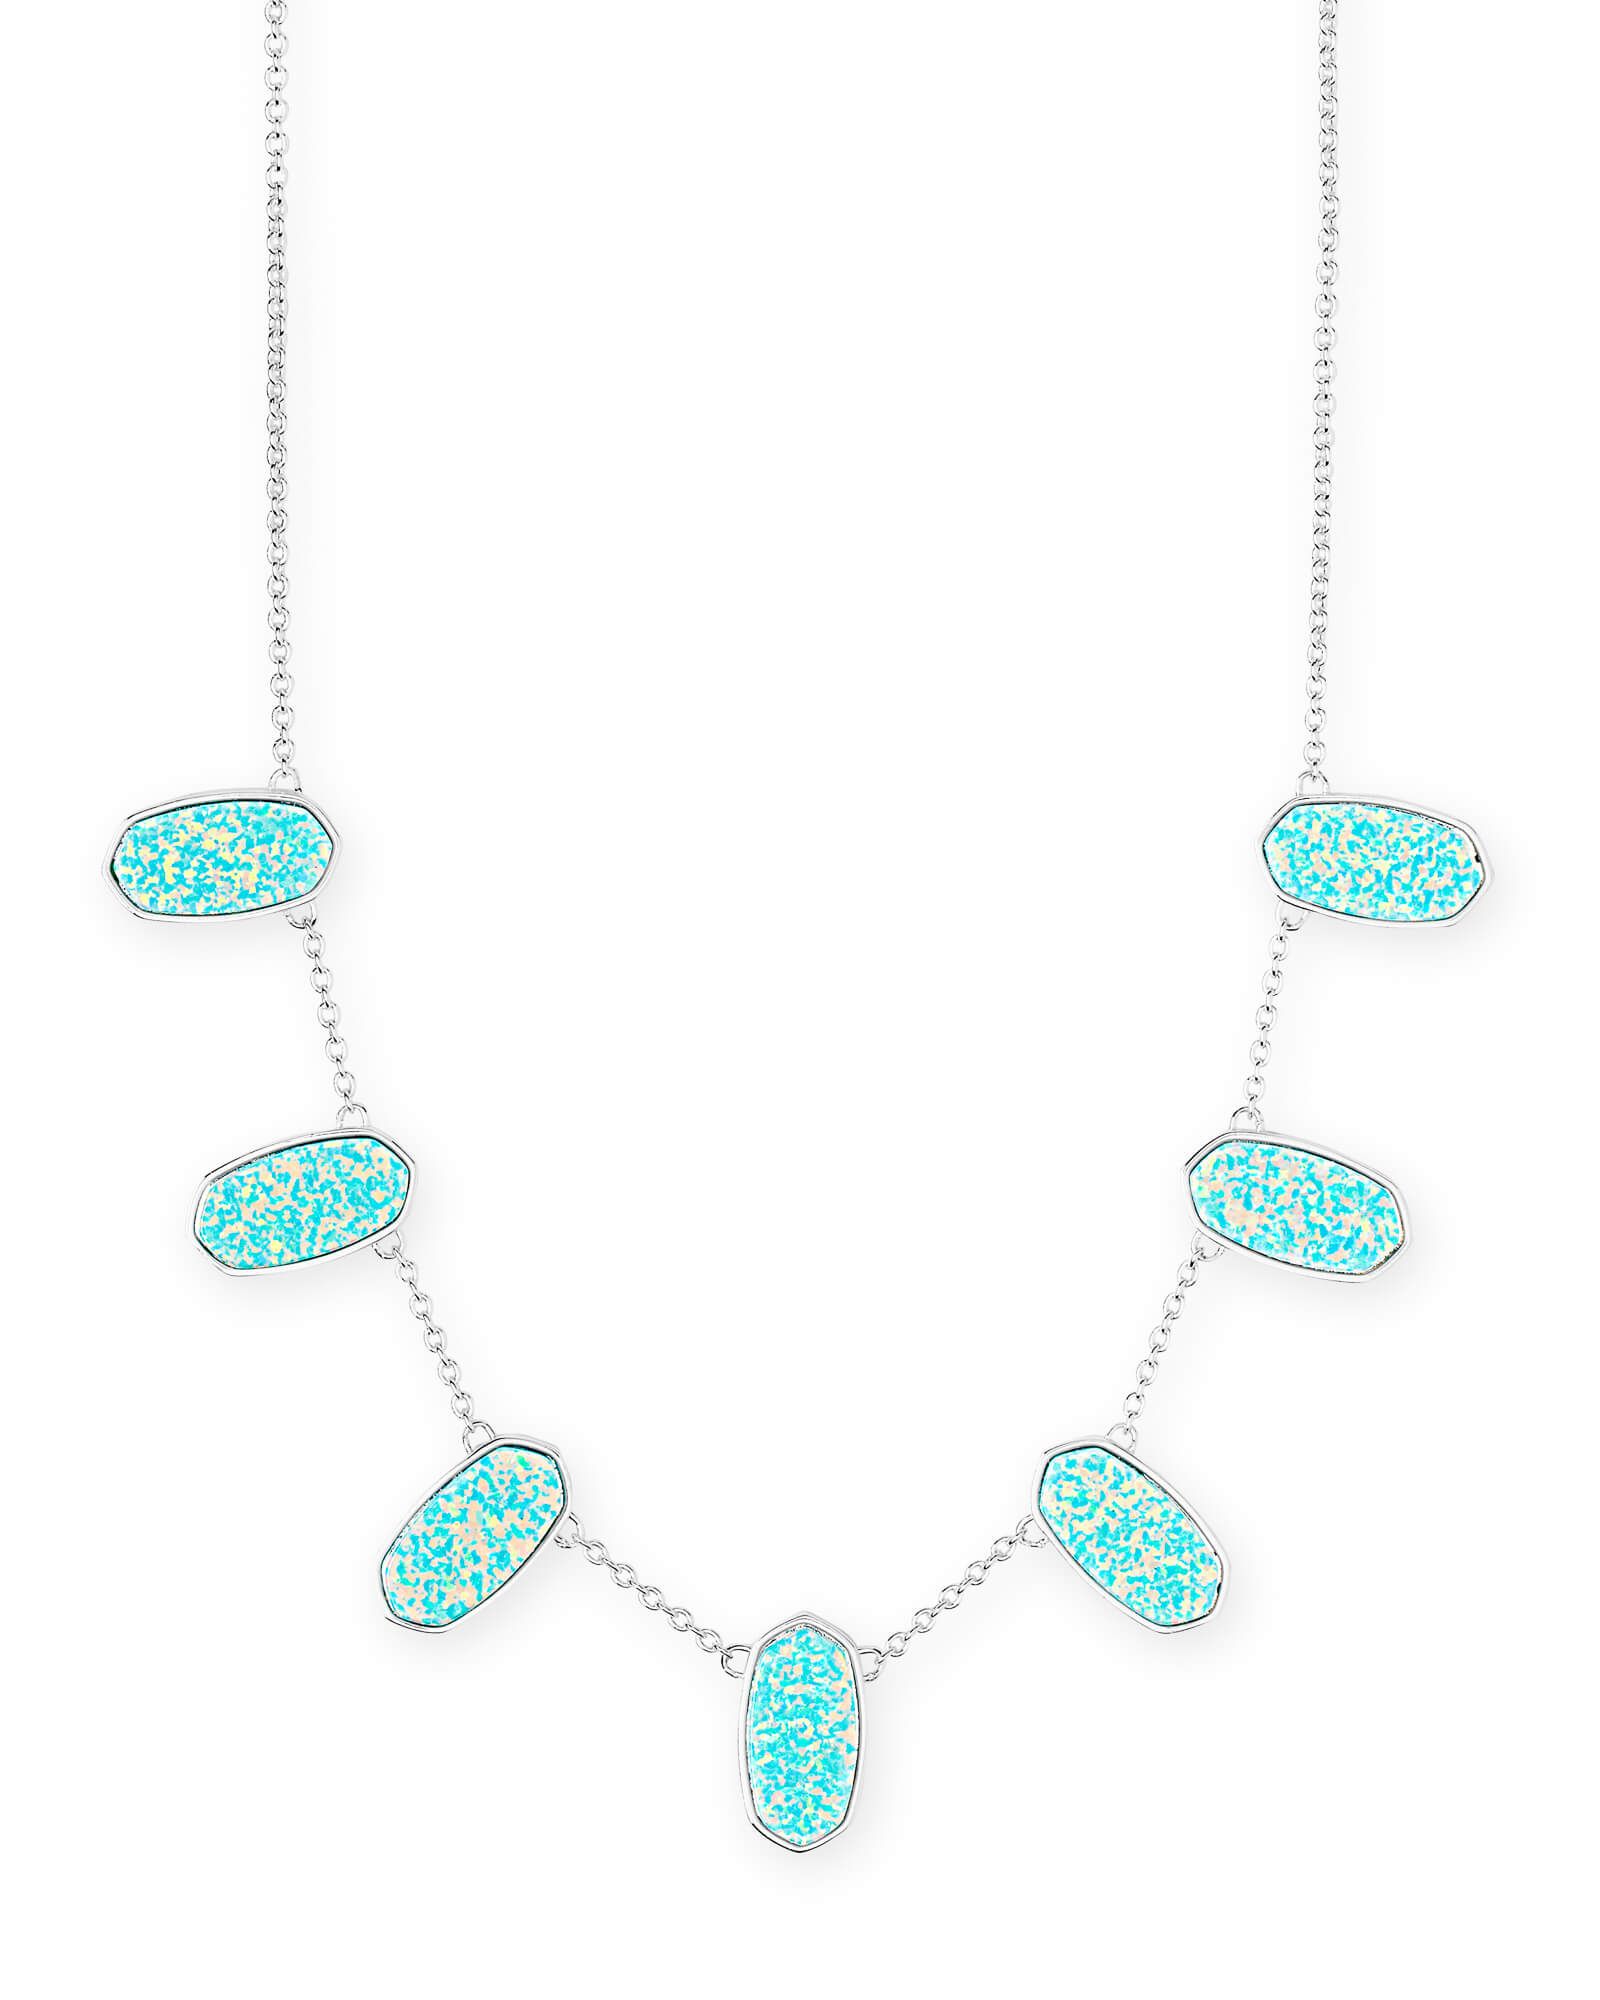 Meadow Bright Silver Statement Necklace in Mint Kyocera Opal | Kendra Scott